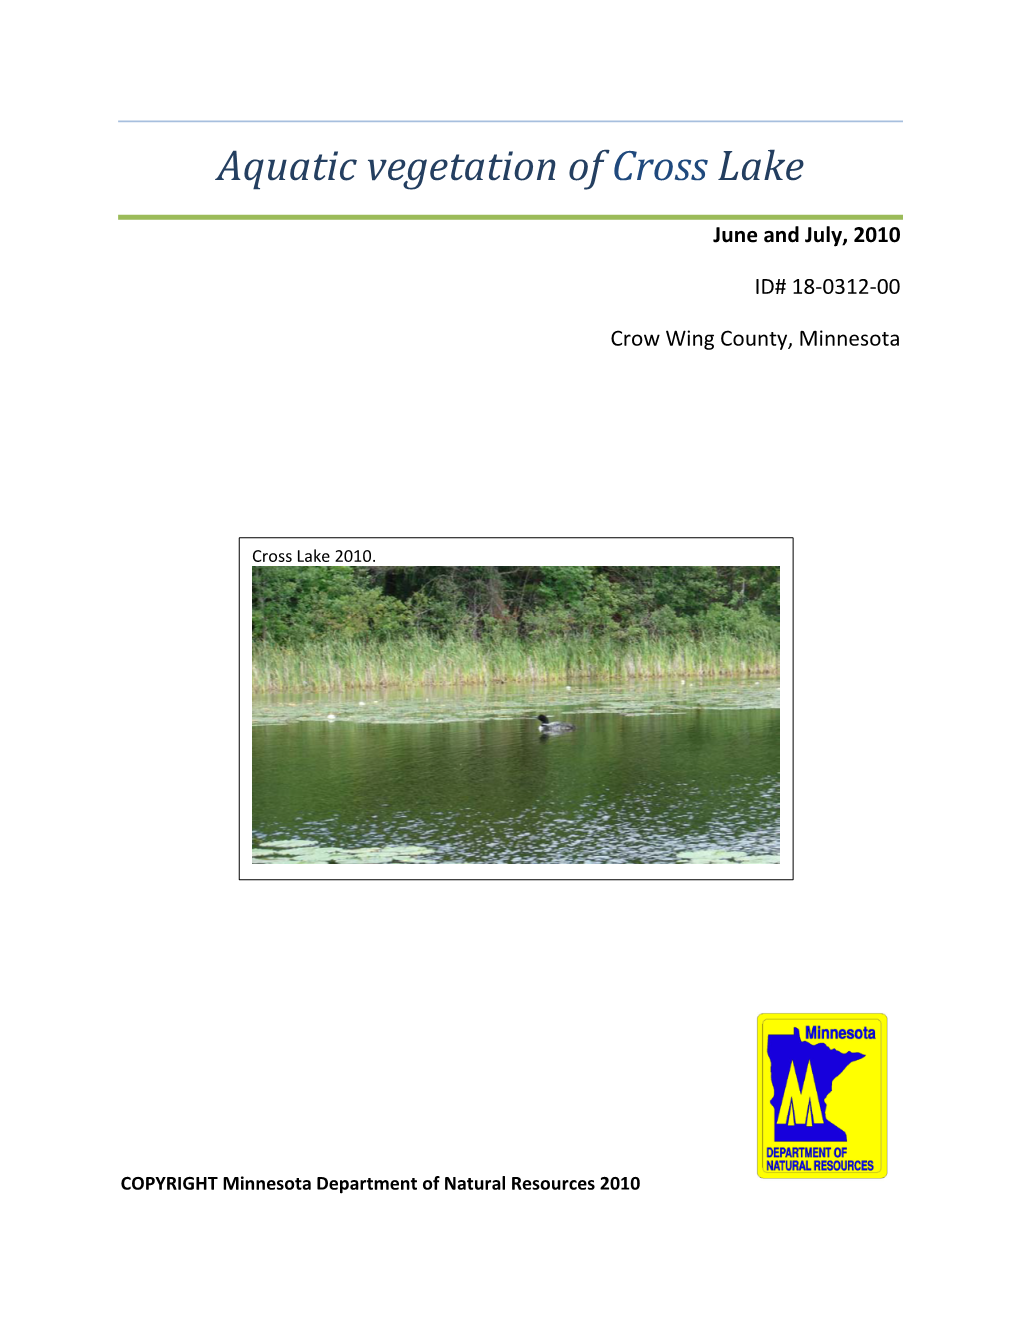 Aquatic Vegetation of Cross Lake